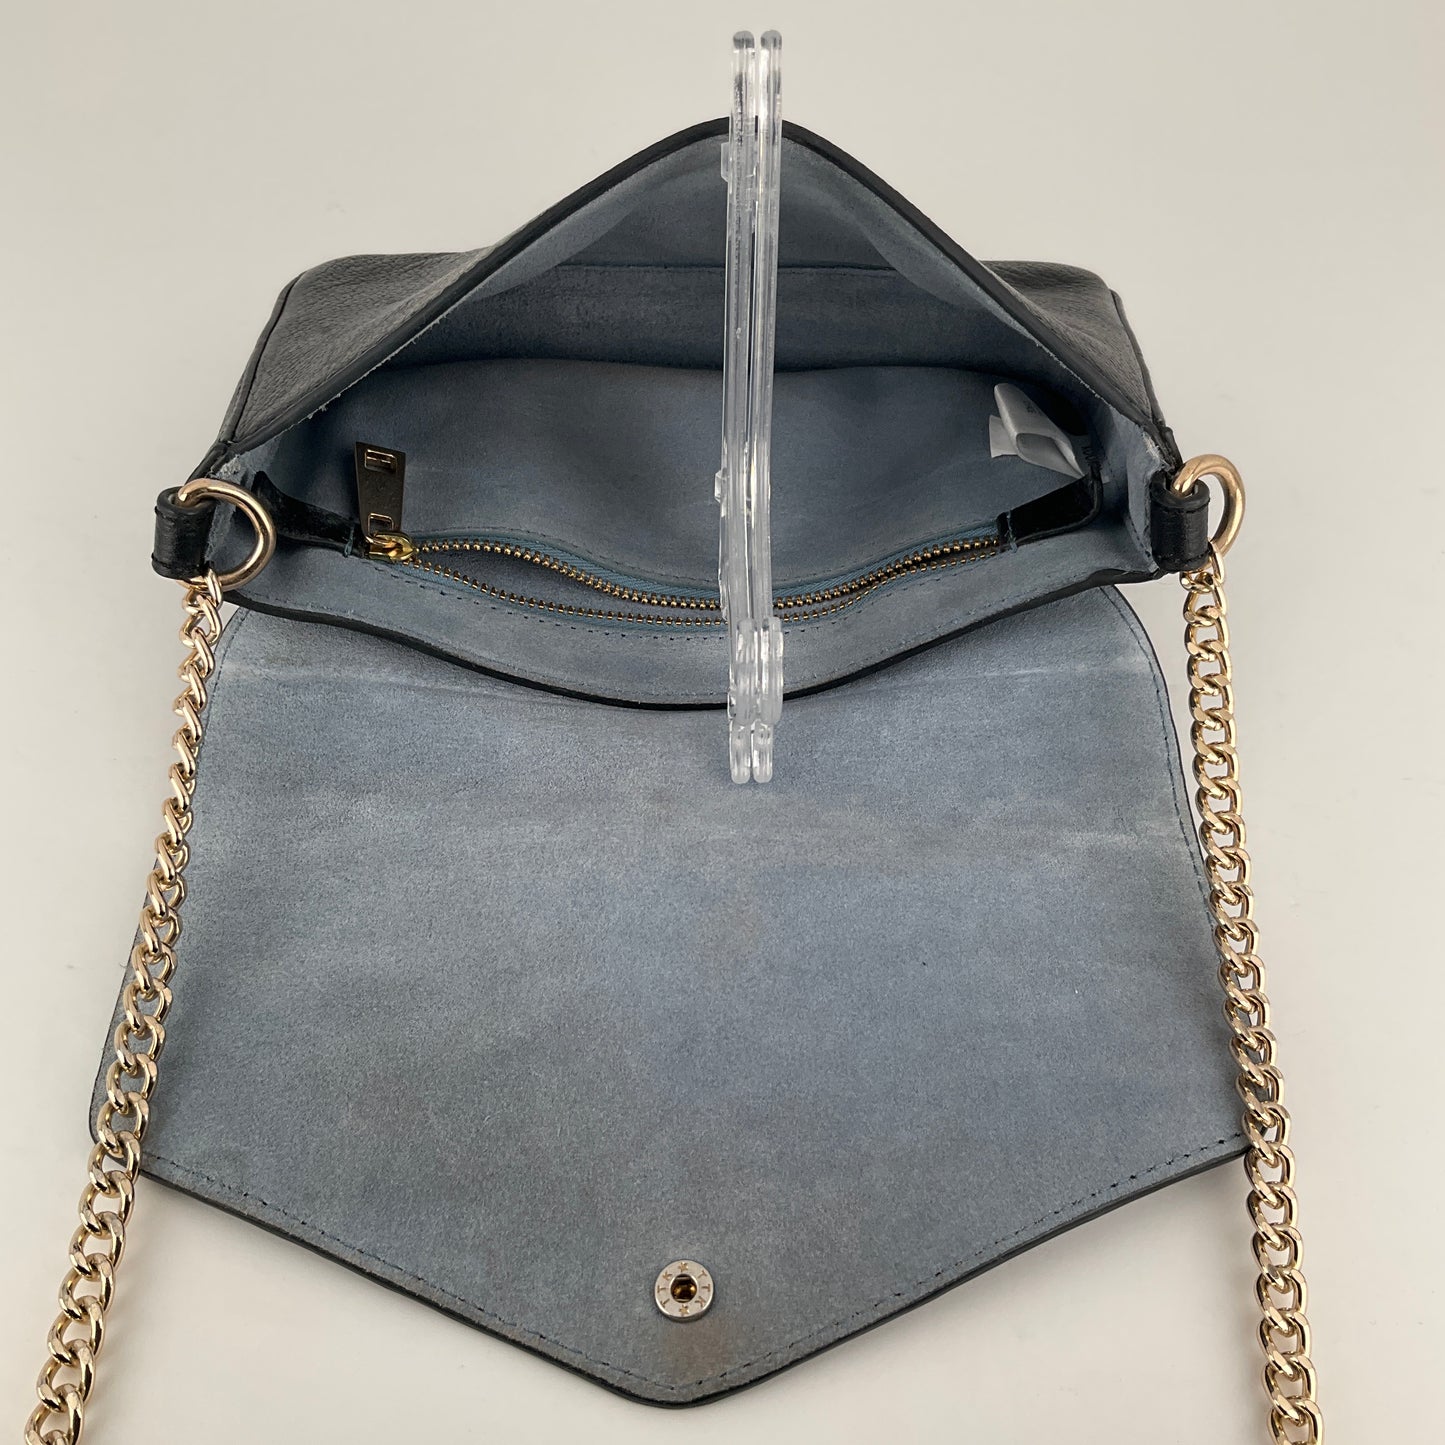 Kookai - Leather Handbag